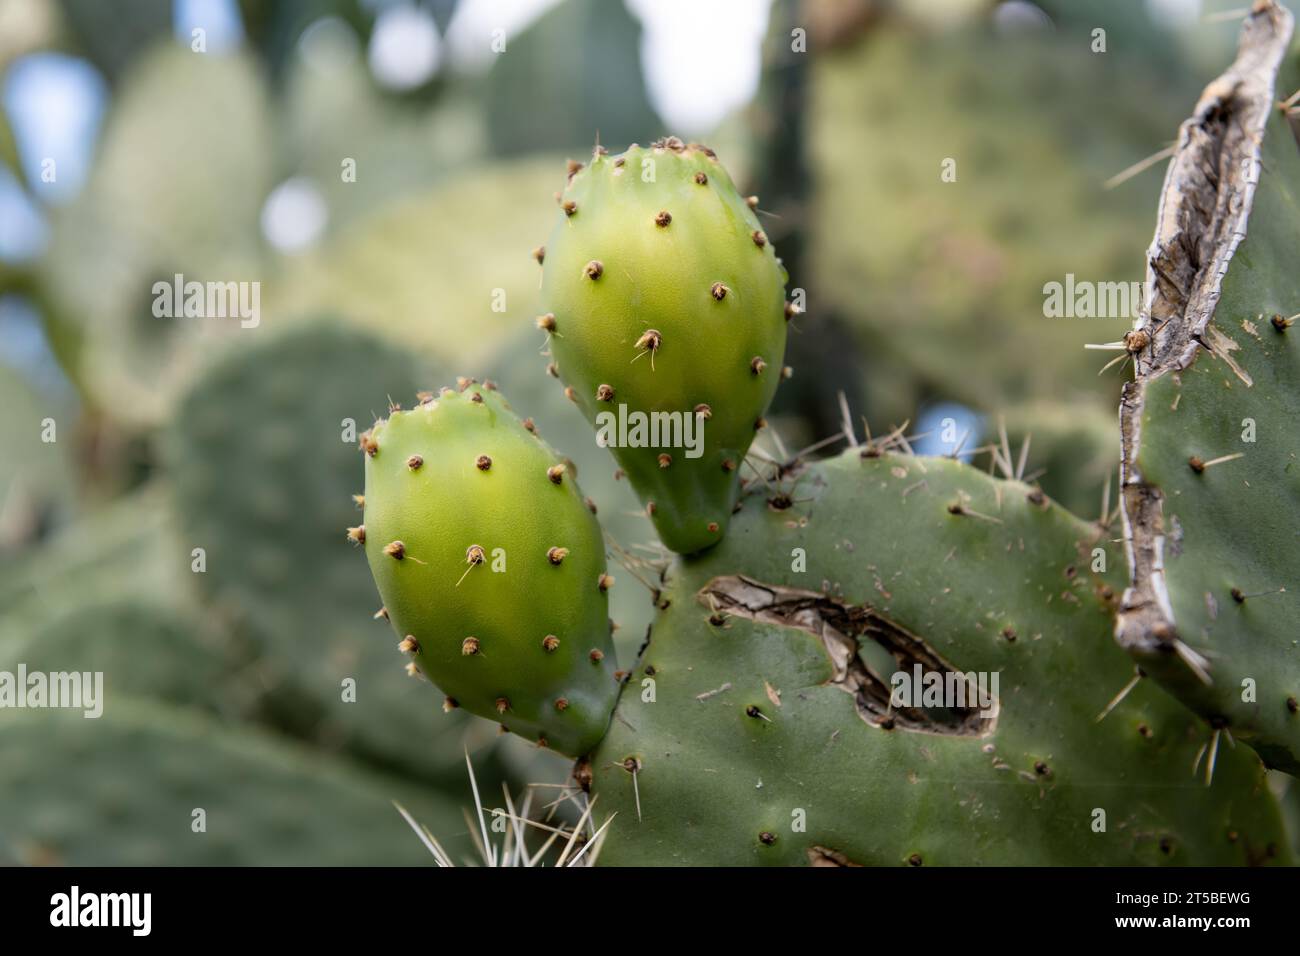 Peras espinosas verdes que crecen en la planta de cactus que muestran los pelos espinosos finos. Foto de stock